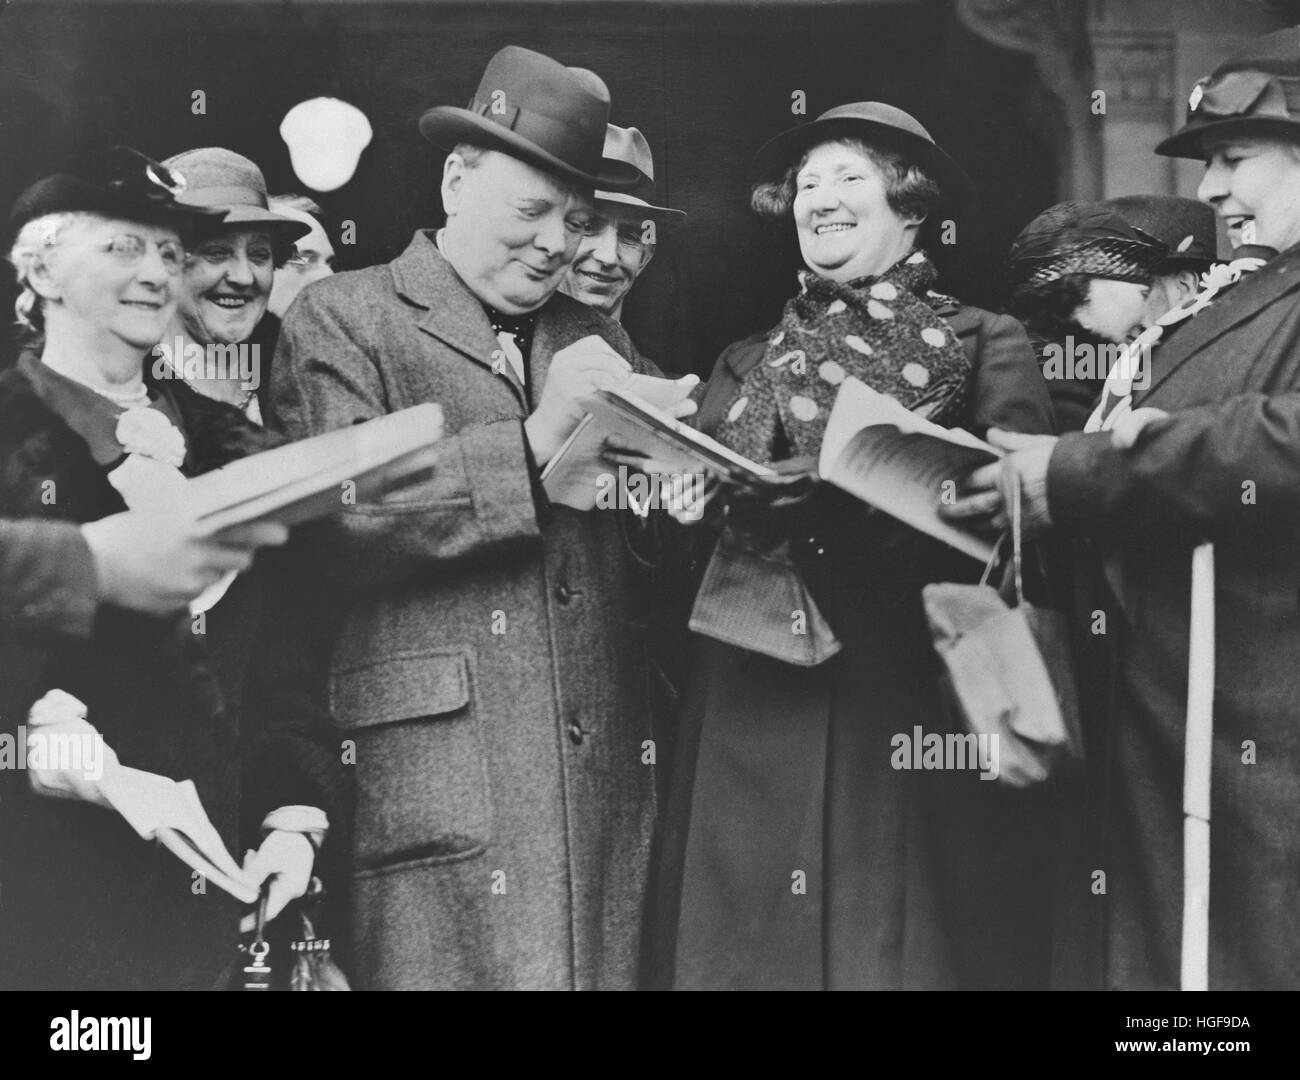 Winston Churchill de signer des autographes à l'ouverture du congrès du parti conservateur à Scarborough.7 Octobre 1937 Banque D'Images